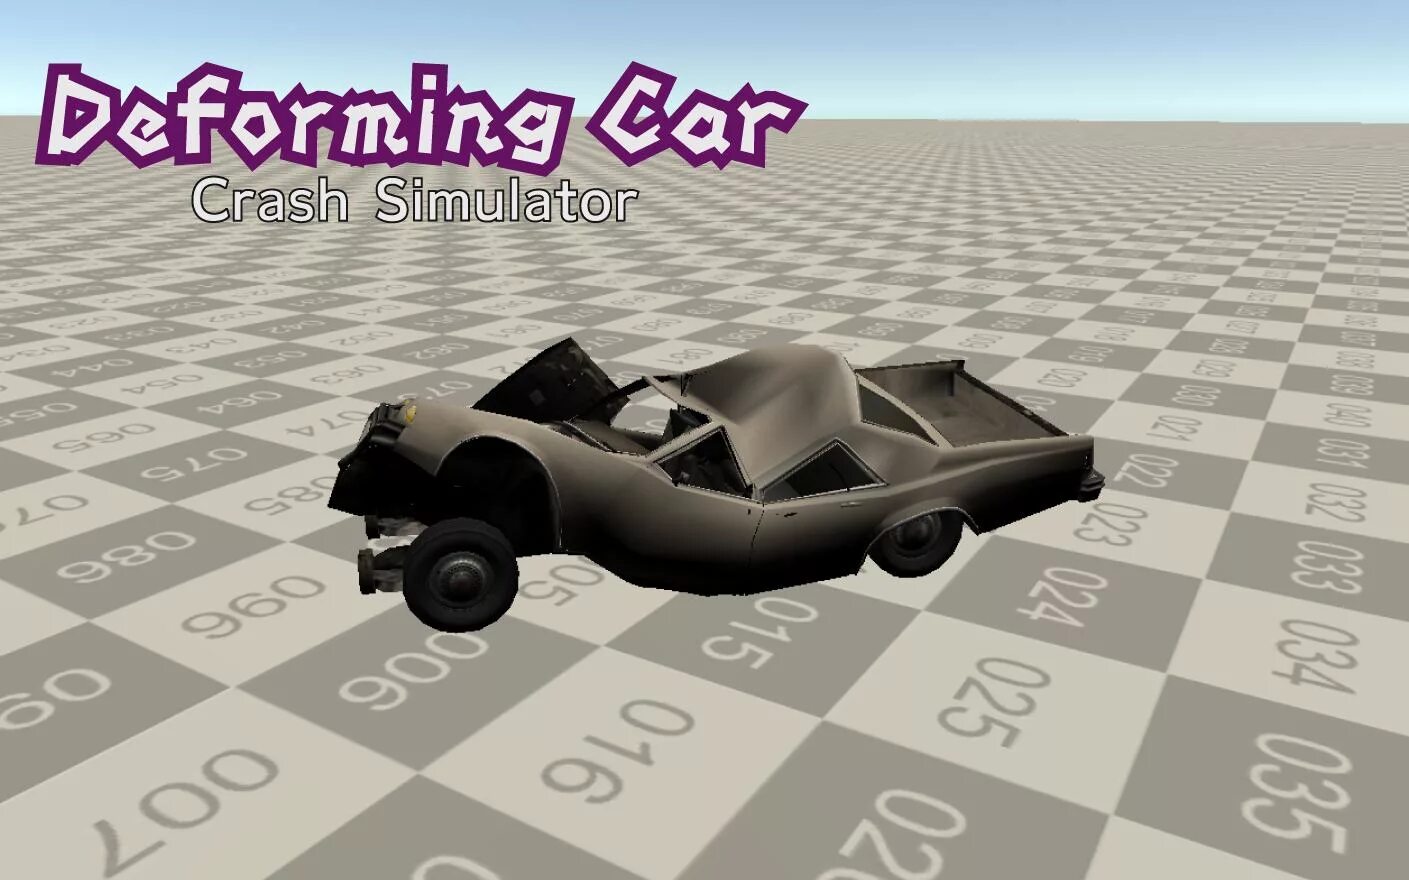 Дефарминг кар краш 2. Deforming car crash Simulator. Кар краш симулятор моды. Deforming car crash. Моды на игру краш тест